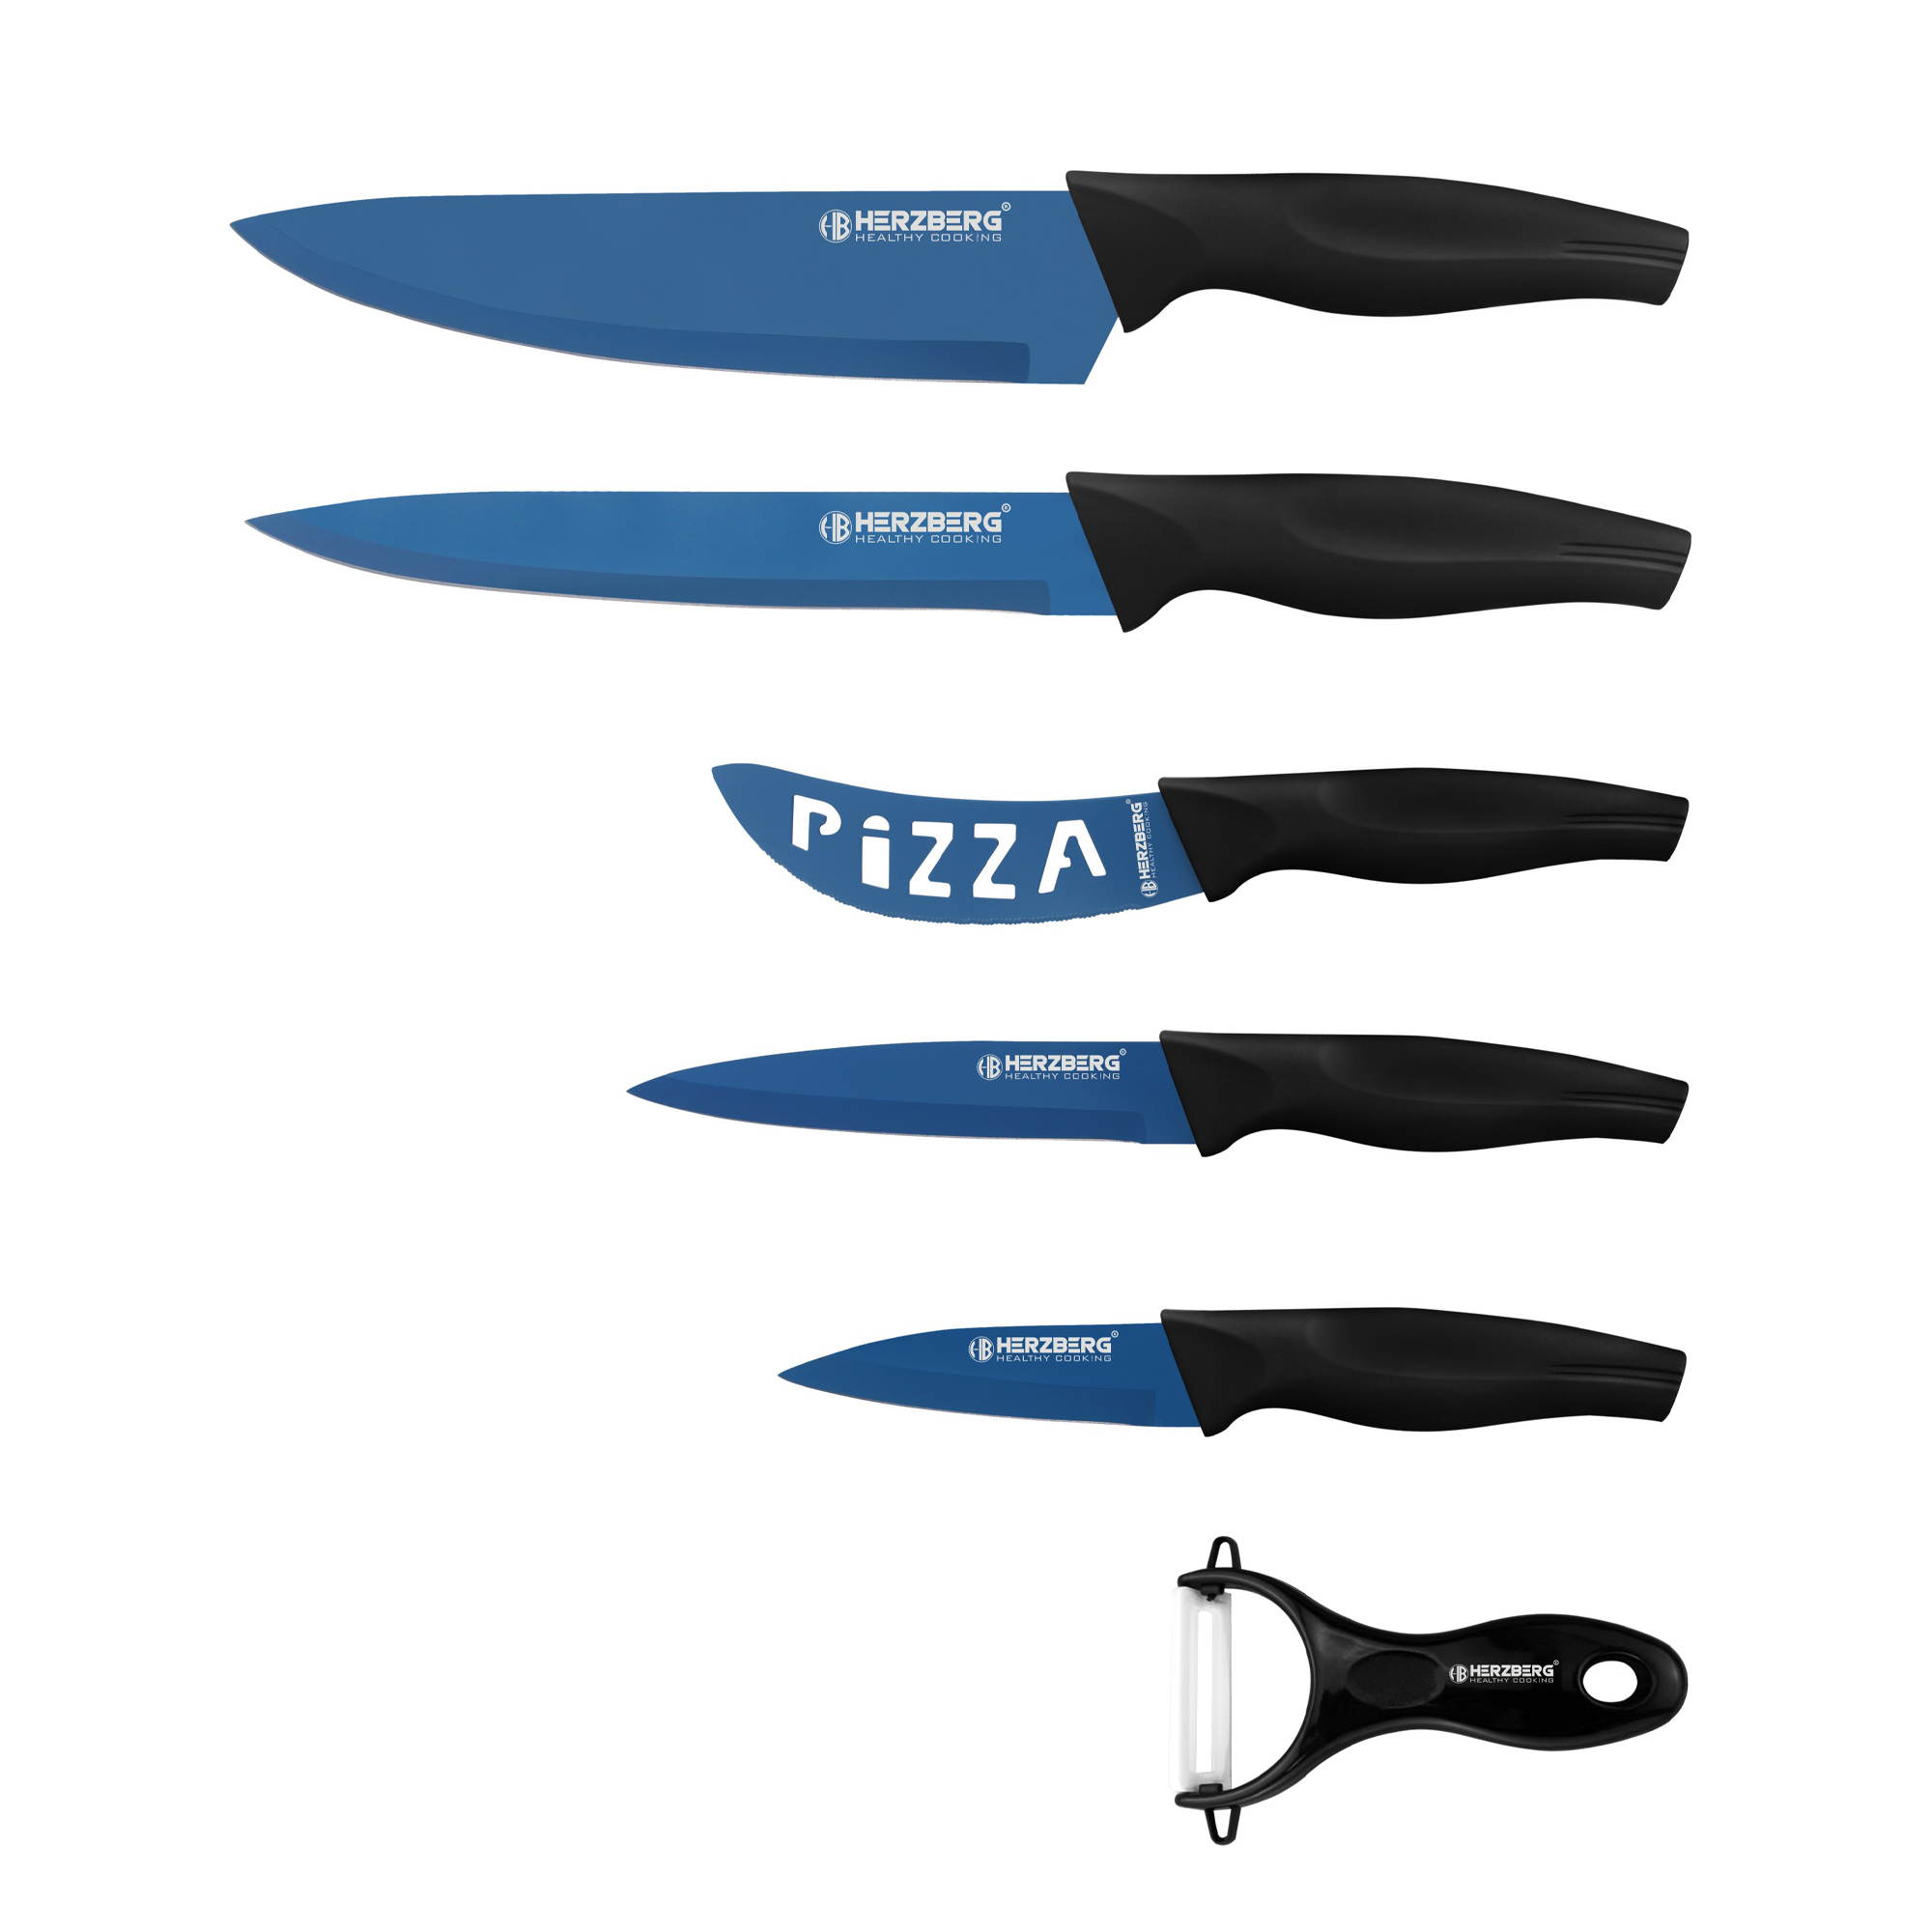 Herzberg HG-KL6BLU: Juego de cuchillos con revestimiento de mármol de 5 piezas - Azul